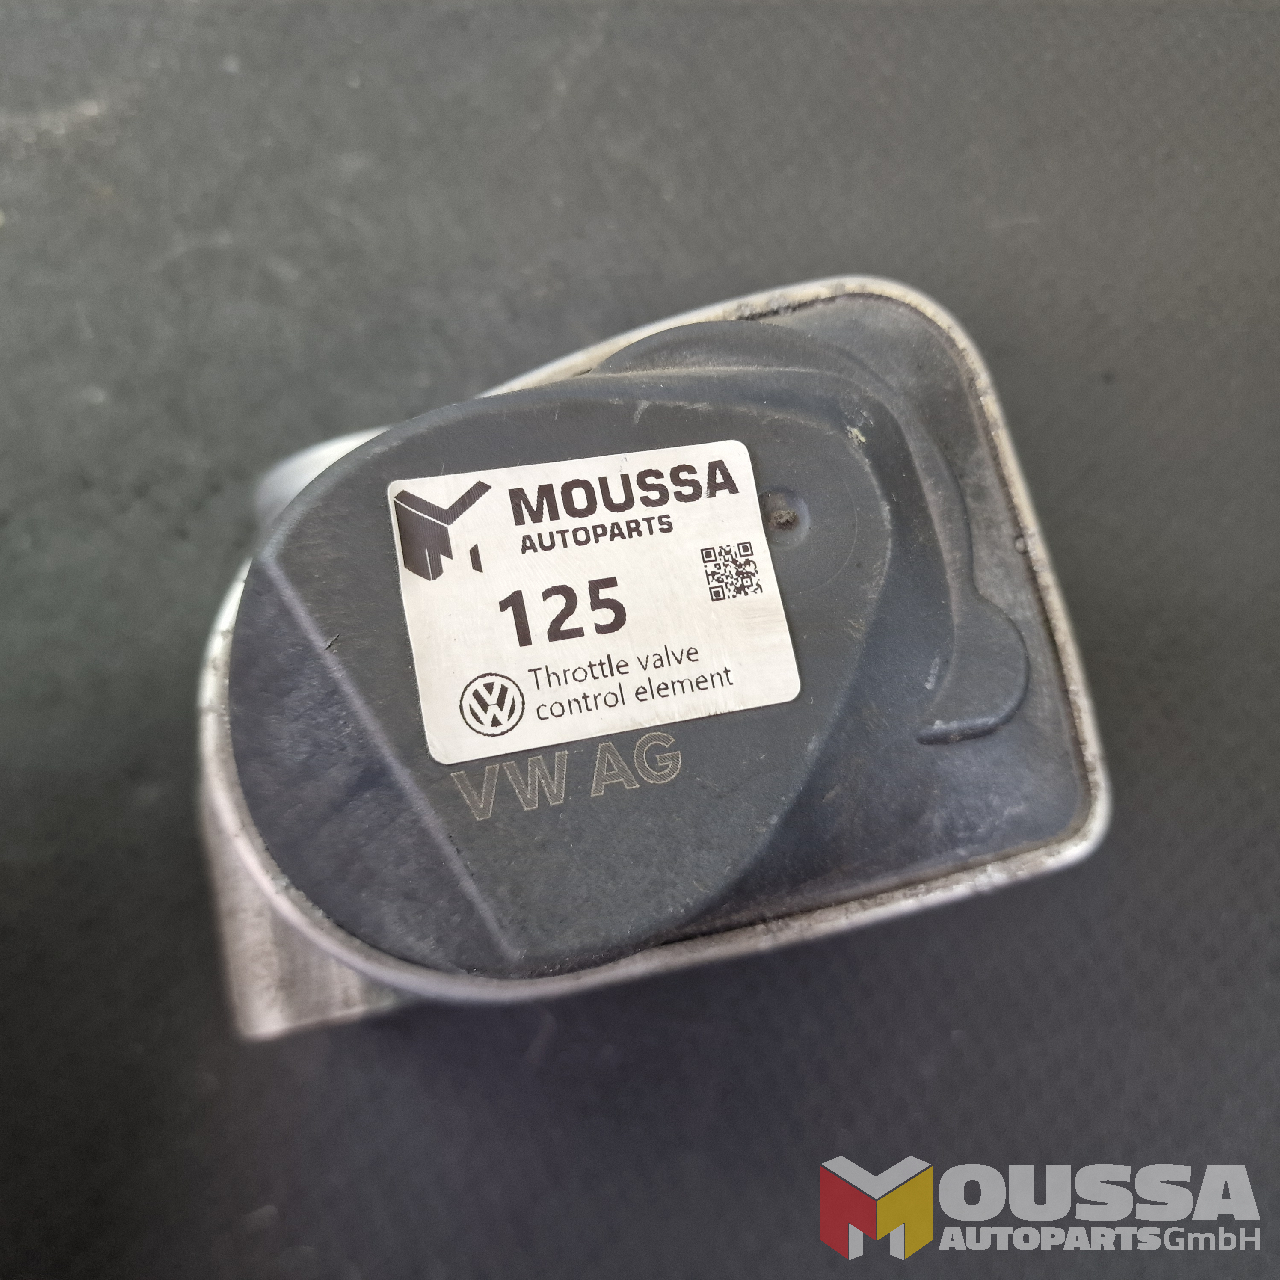 MOUSSA-AUTOPARTS-64a3302c202bd.jpg